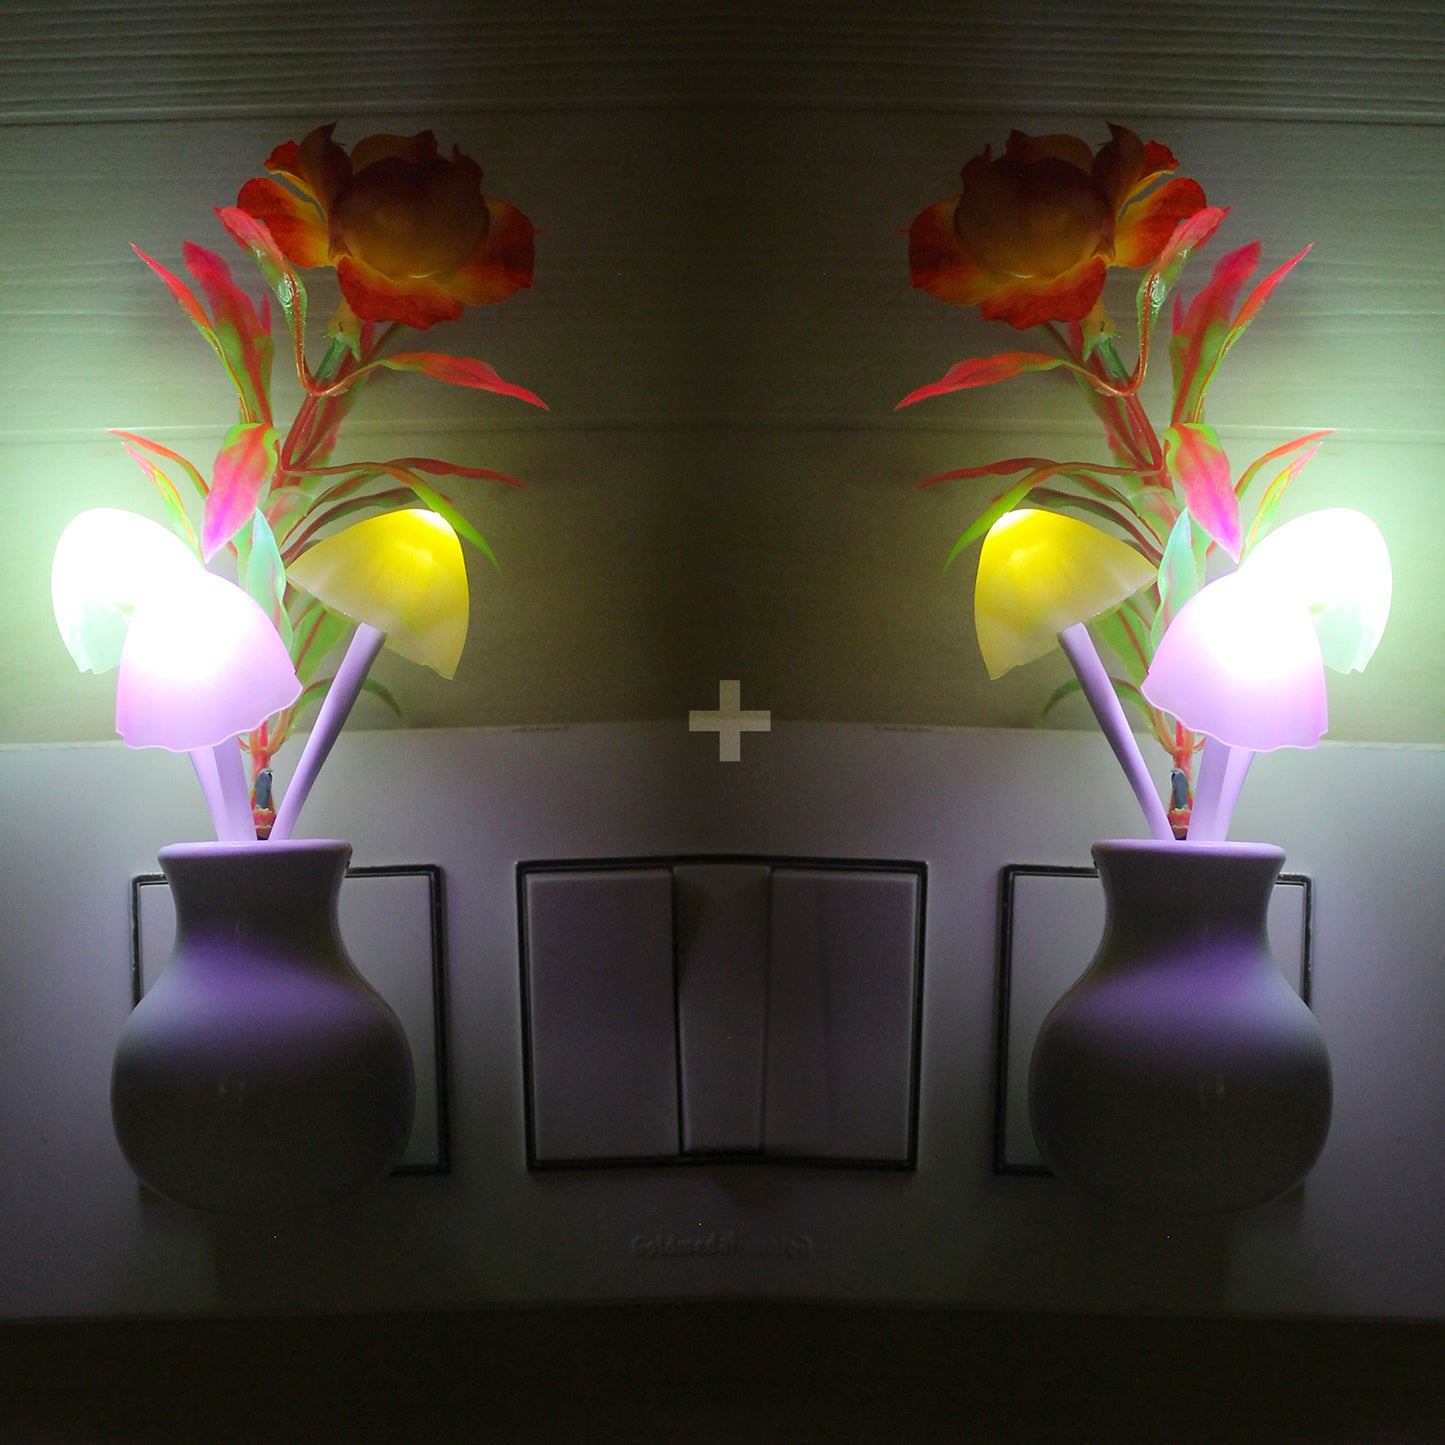 Pick Ur Needs® Auto On/Off Color Changing Sensor LED Night Light Mushroom Lamp Plug-in